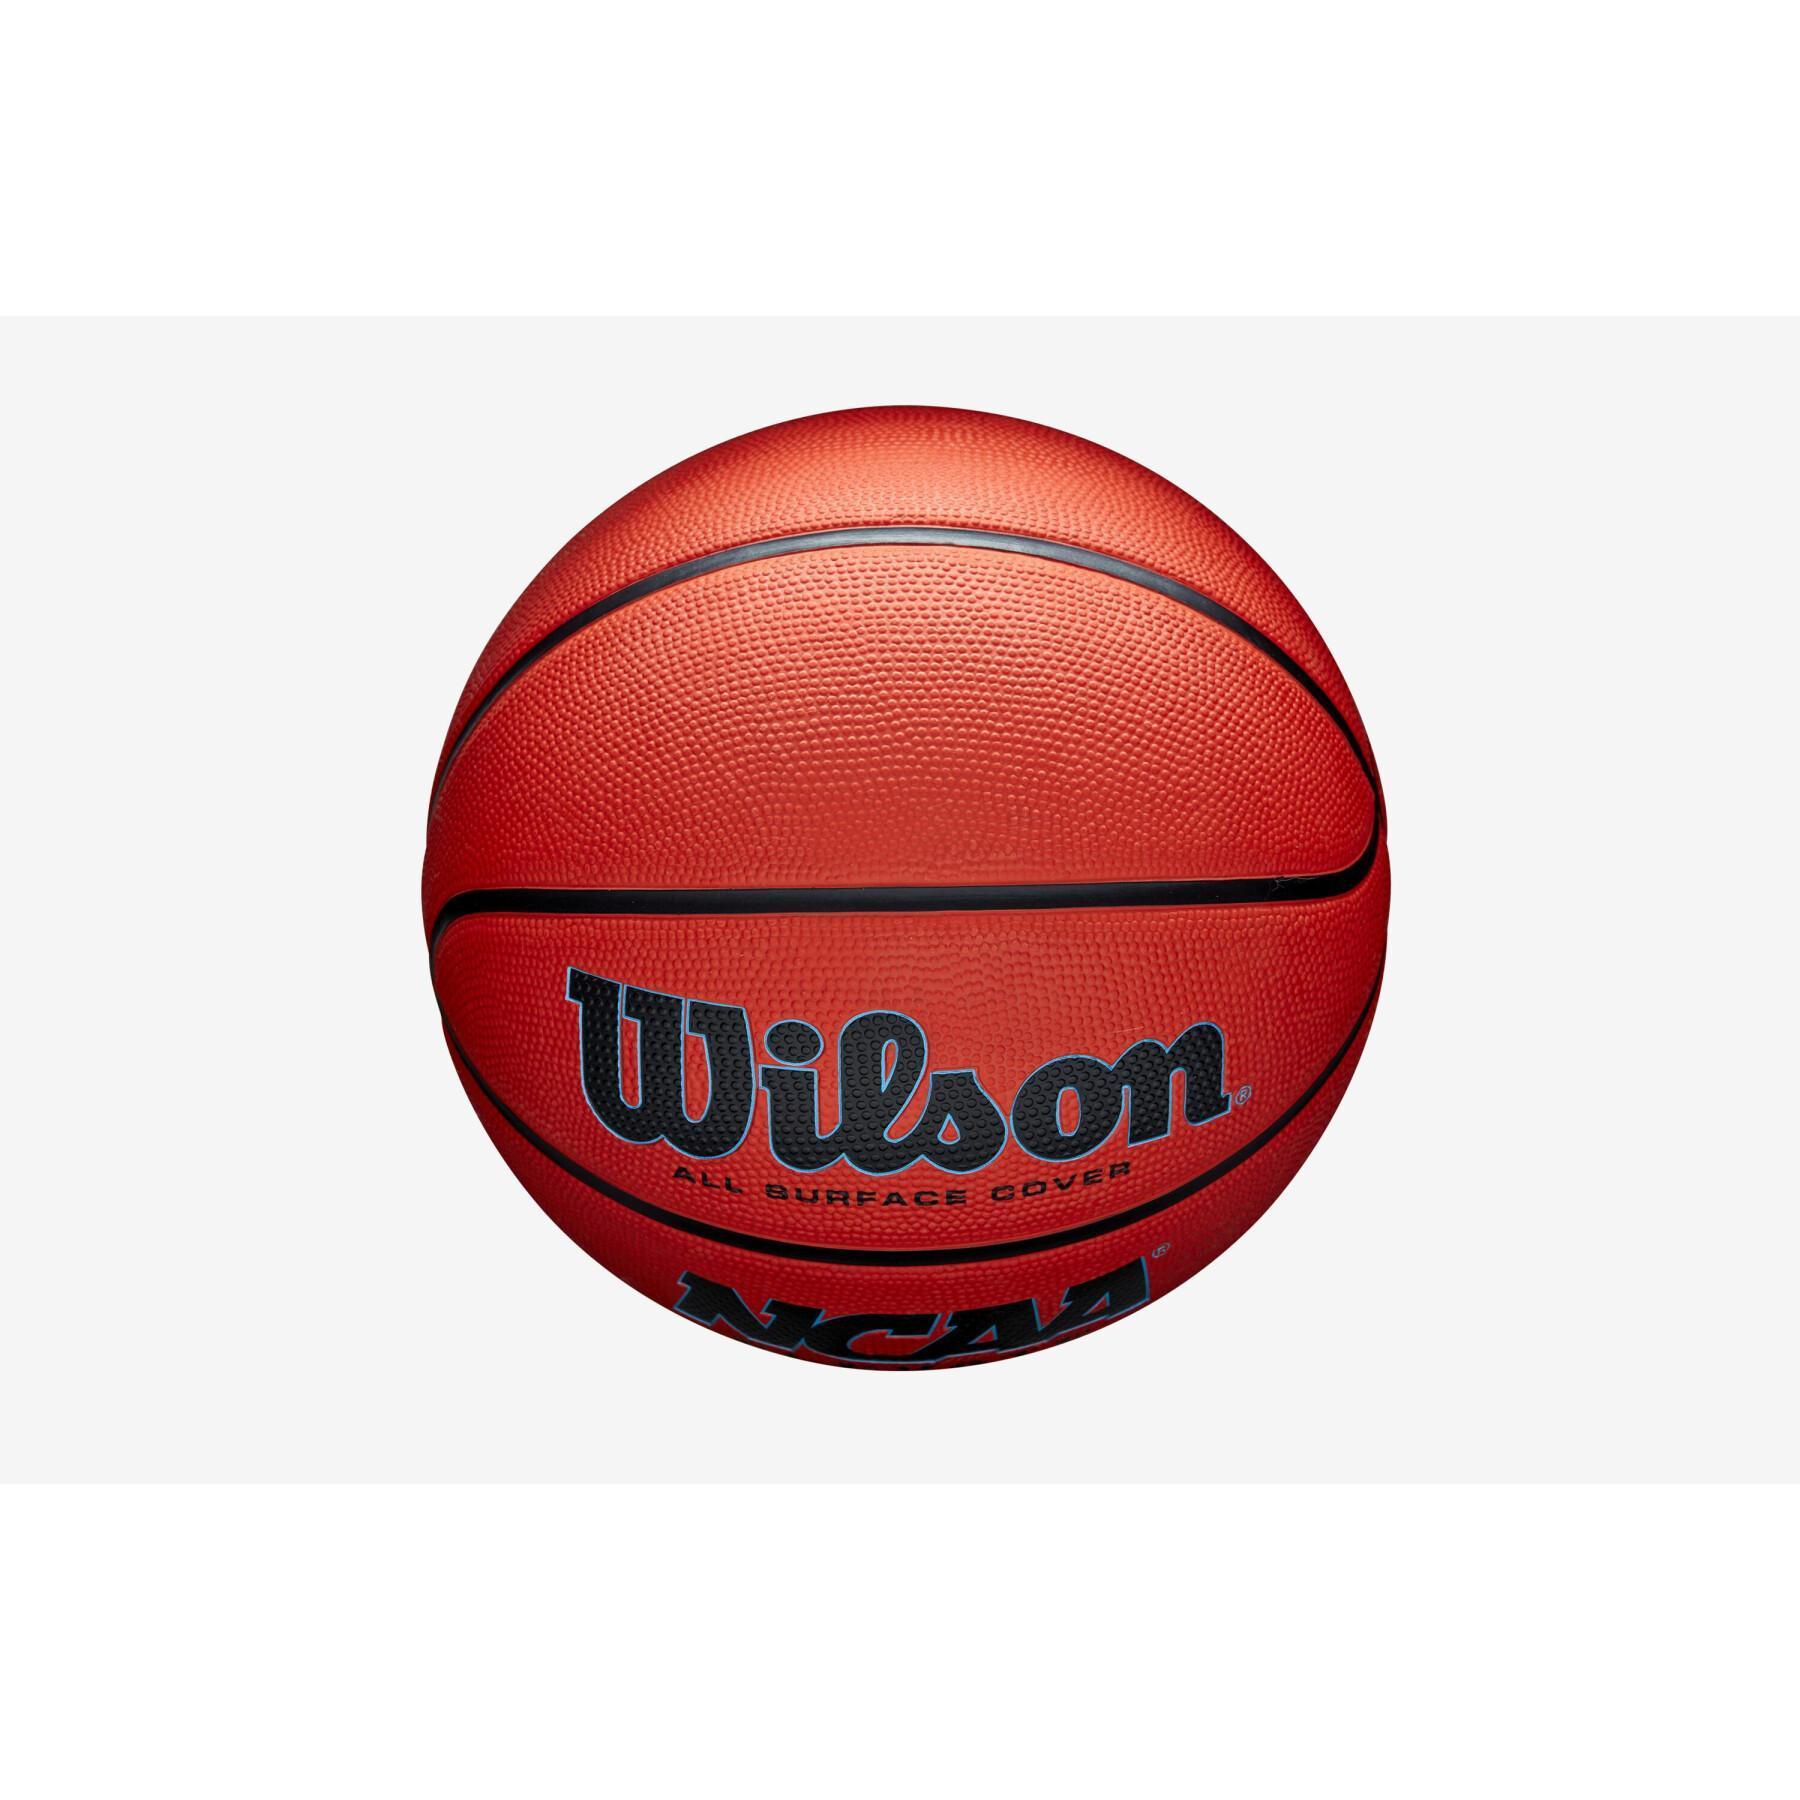 globo elevador Wilson NCAA